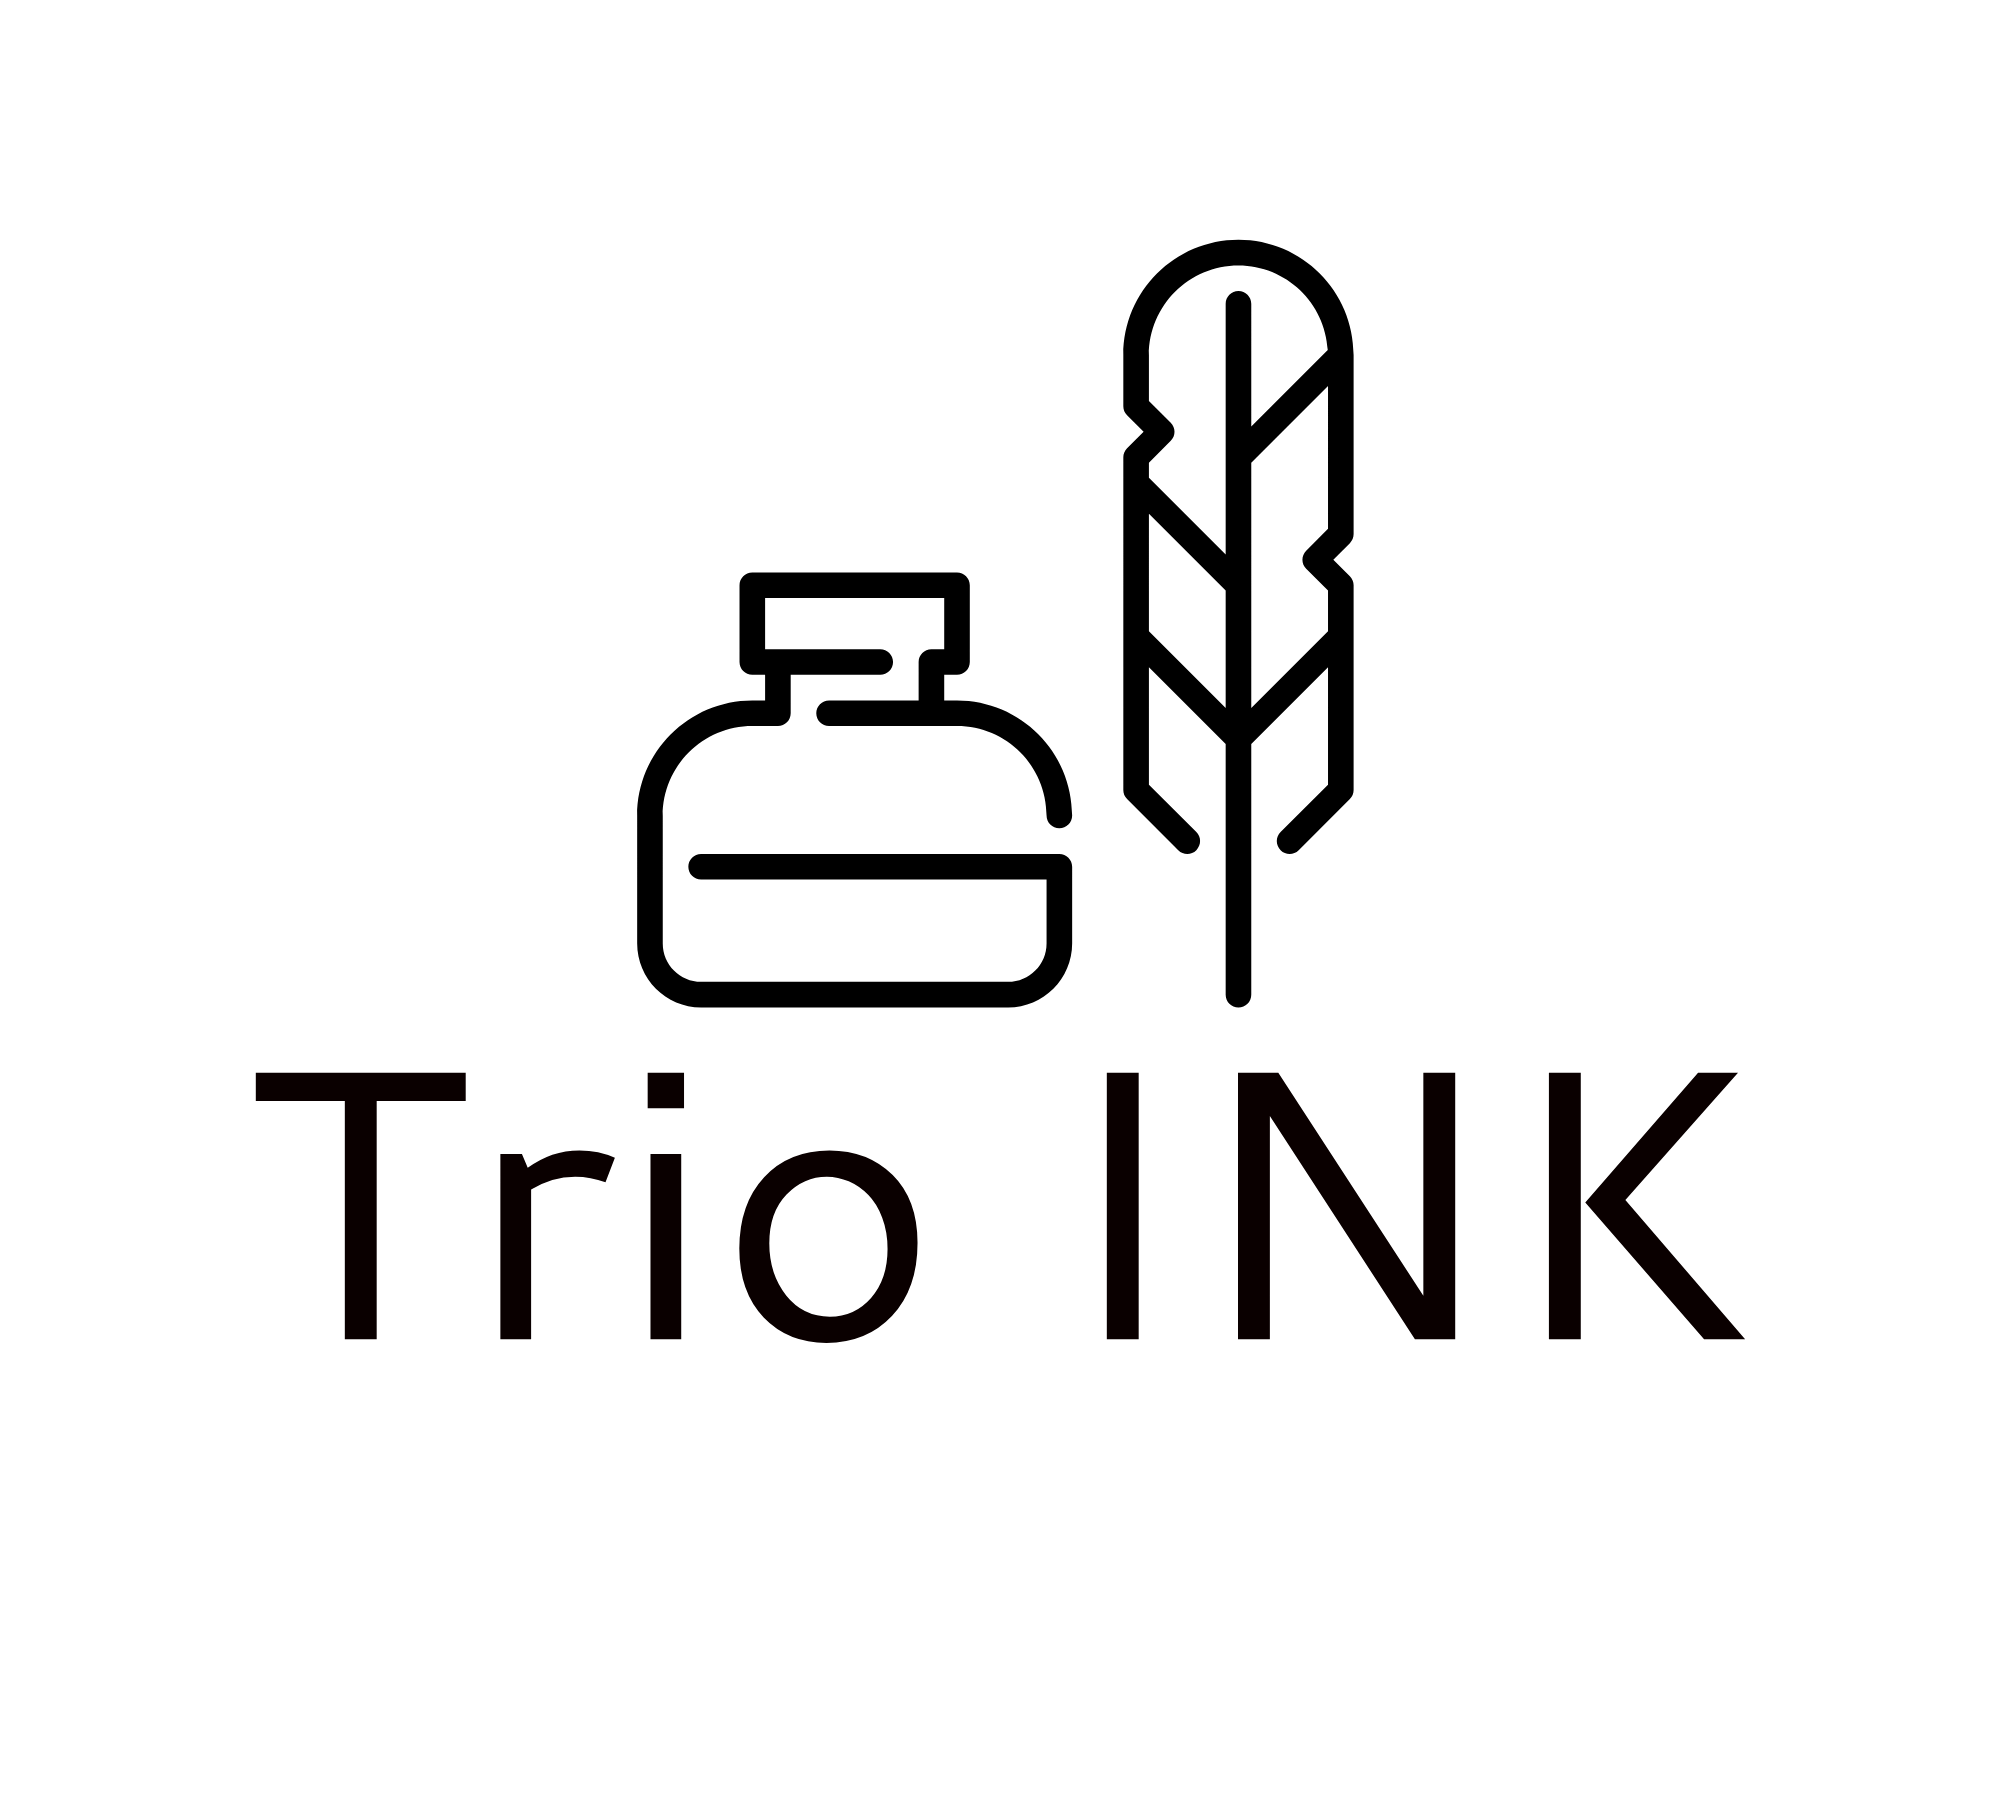 Personal logo(trio) by Saidur on Dribbble